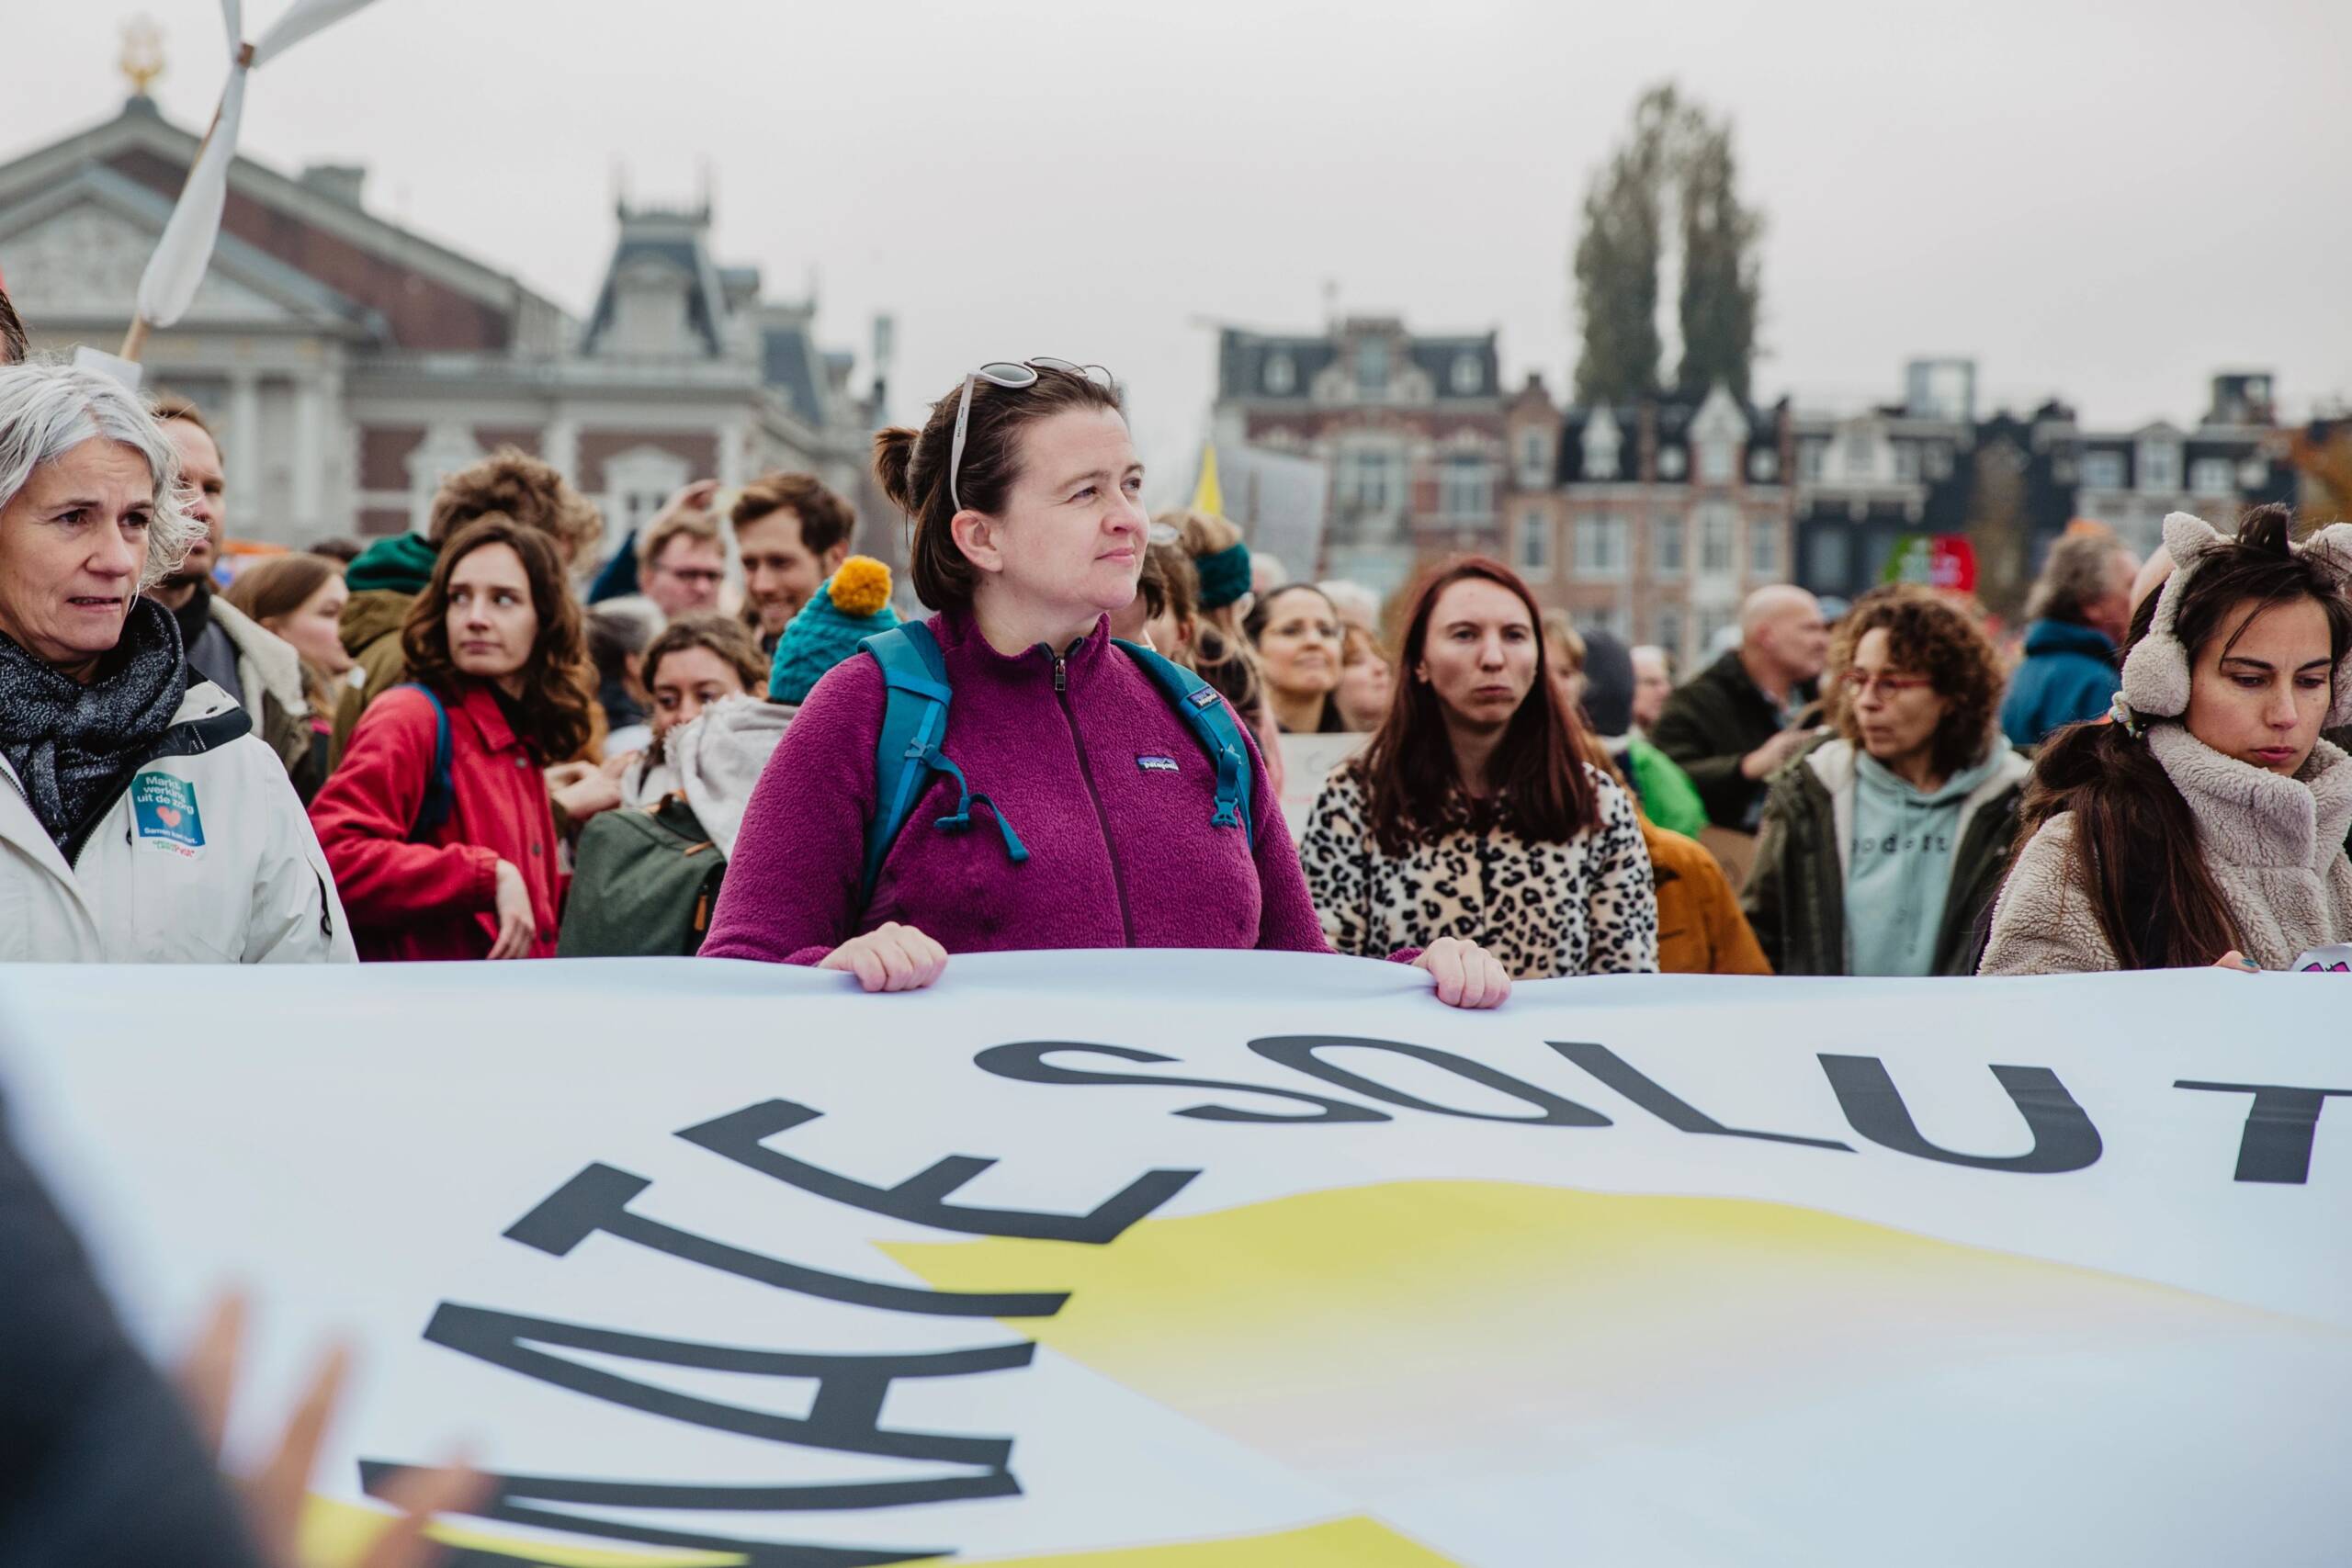 Amsterdam, Pays-Bas, le 12 novembre : 350.org et Fossielvrij NL lancent un appel à accélérer la transition vers le renouvelable dans une marche record pour le climat dans les rues d’Amsterdam. Plus de 85 000 personnes sont descendues dans la rue. Crédit photo : Laura Ponchel / Fossielvrij NL